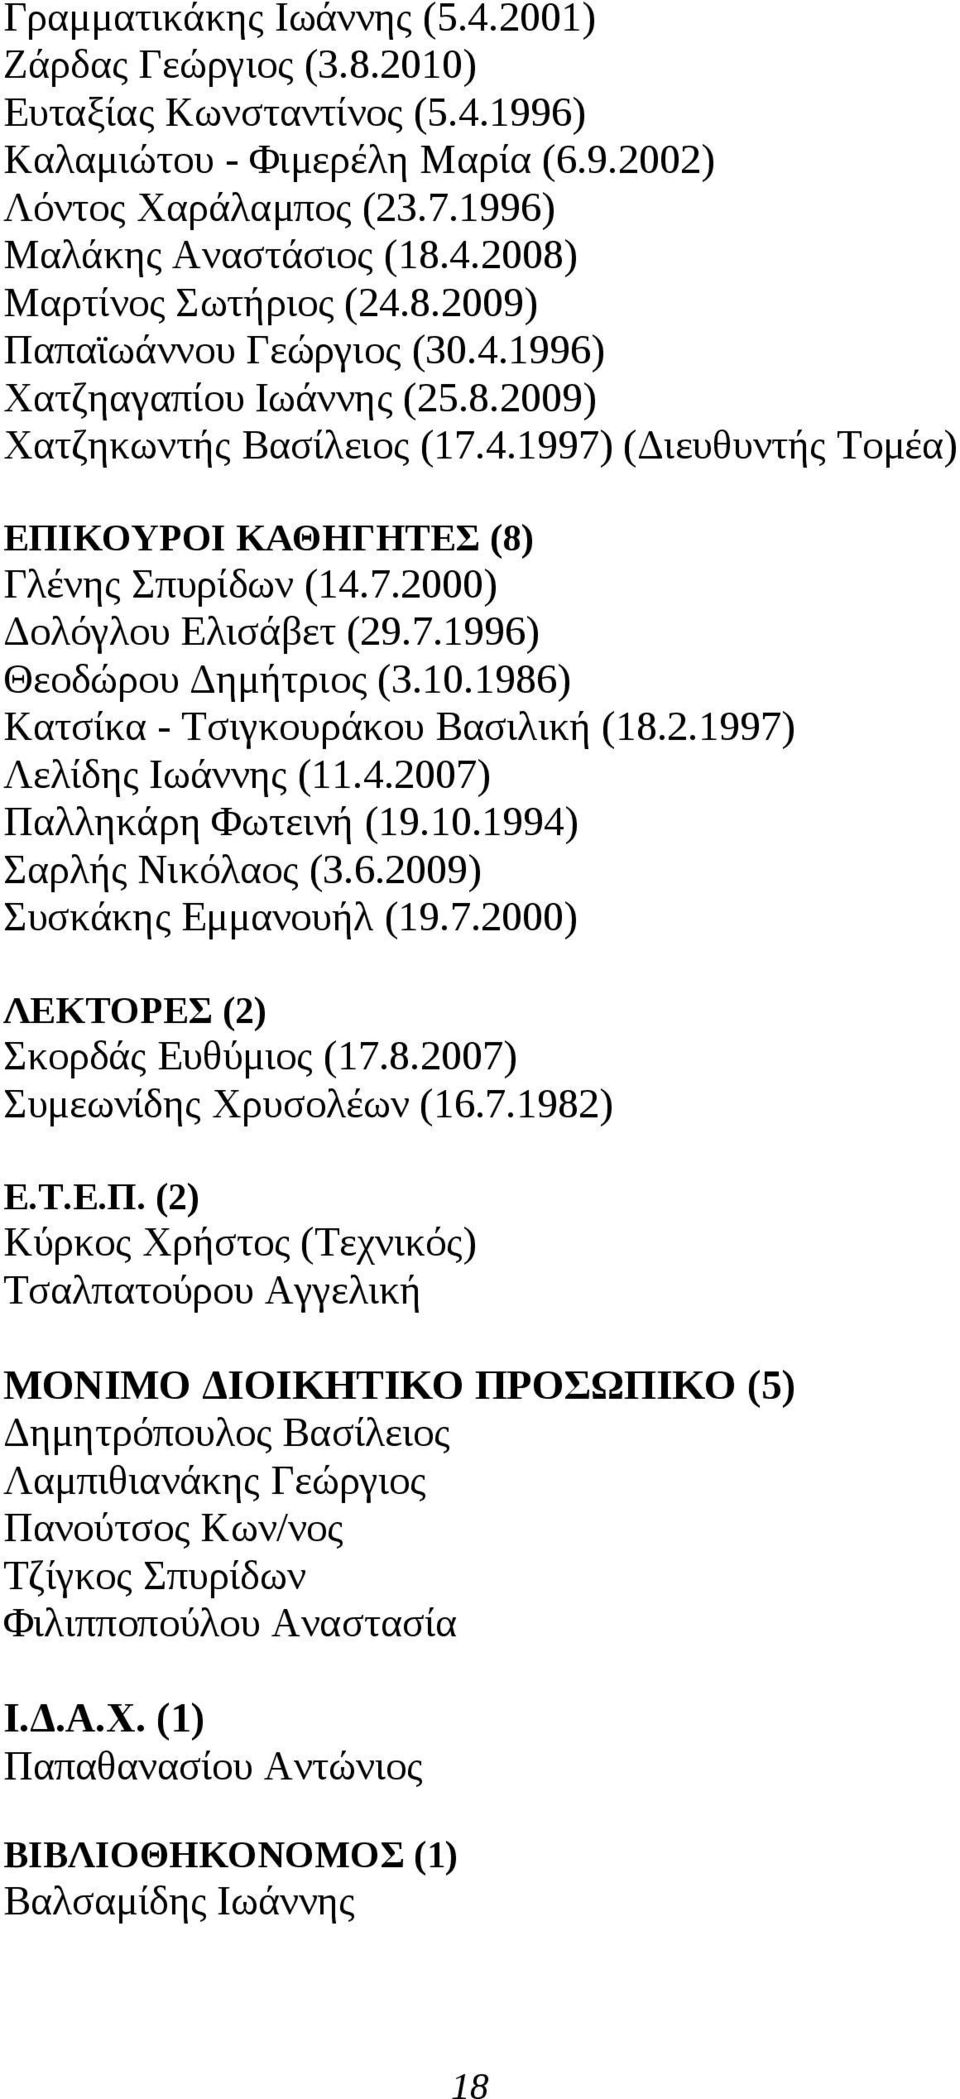 10.1986) Κατσίκα - Τσιγκουράκου Βασιλική (18..1997) Λελίδης Ιωάννης (11.4.007) Παλληκάρη Φωτεινή (19.10.1994) Σαρλής Νικόλαος (3.6.009) Συσκάκης Εμμανουήλ (19.7.000) ΛΕΚΤΟΡΕΣ () Σκορδάς Ευθύμιος (17.